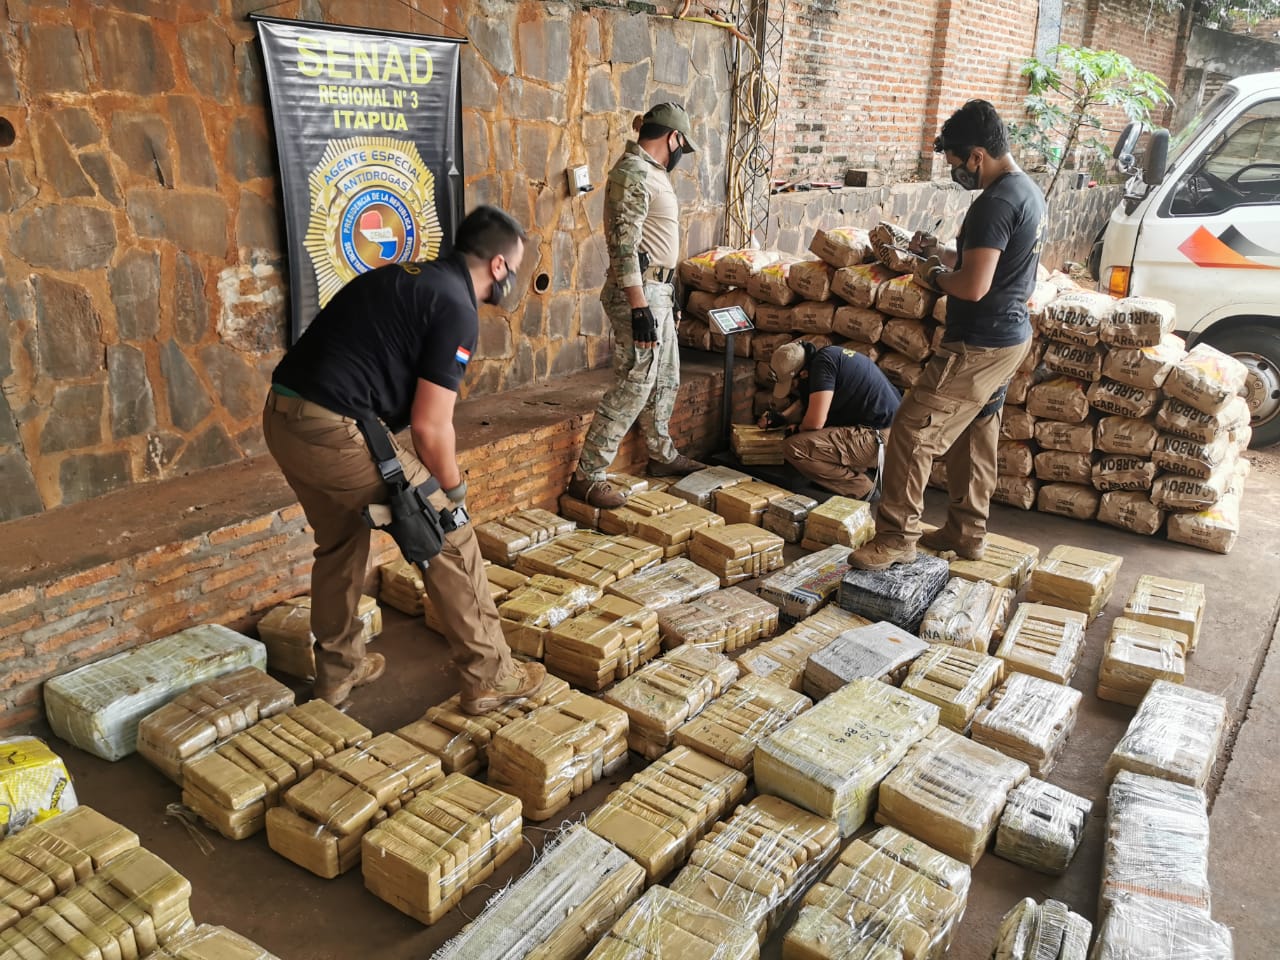 Unos 729 kilos de marihuana prensada fueron detectados. Presumen que la carga tenía como destino Argentina. Foto: @senad_paraguay